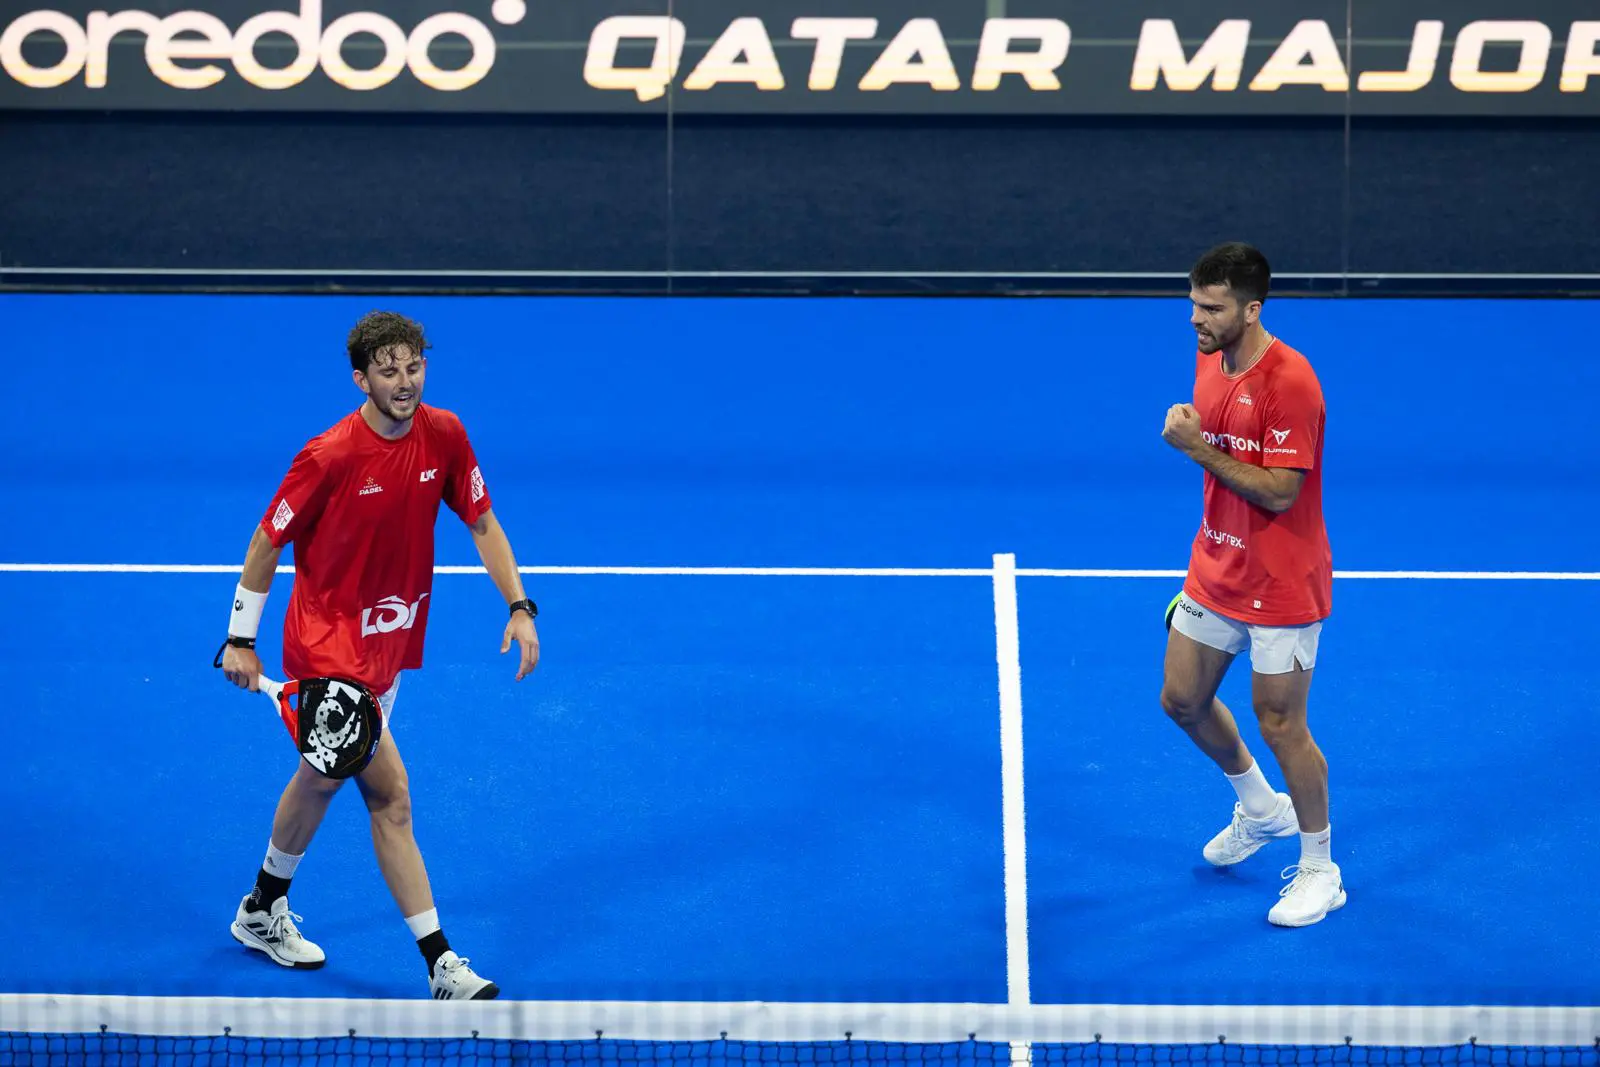 卡塔尔特锦赛 – 迈克·扬瓜斯和哈维·加里多击败卫冕冠军并进入决赛